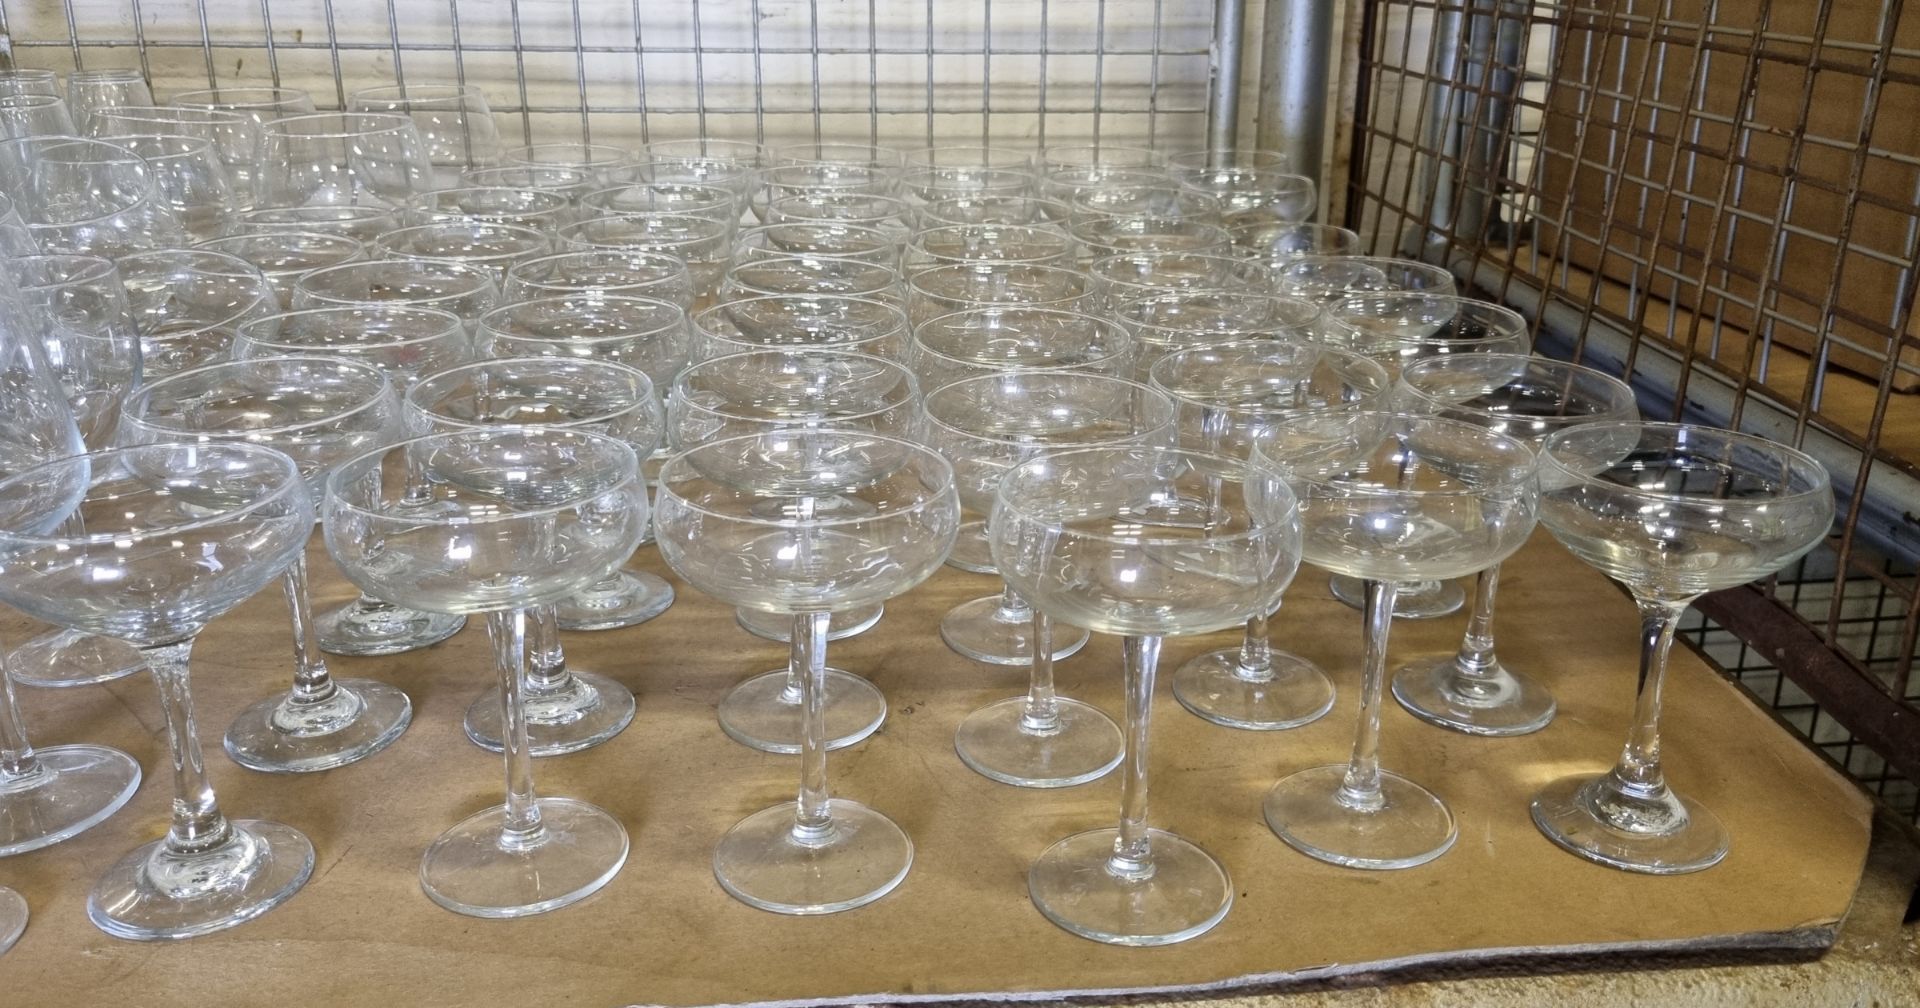 Glassware - martini, wine & flute glasses - Unknown quantity - Image 4 of 6